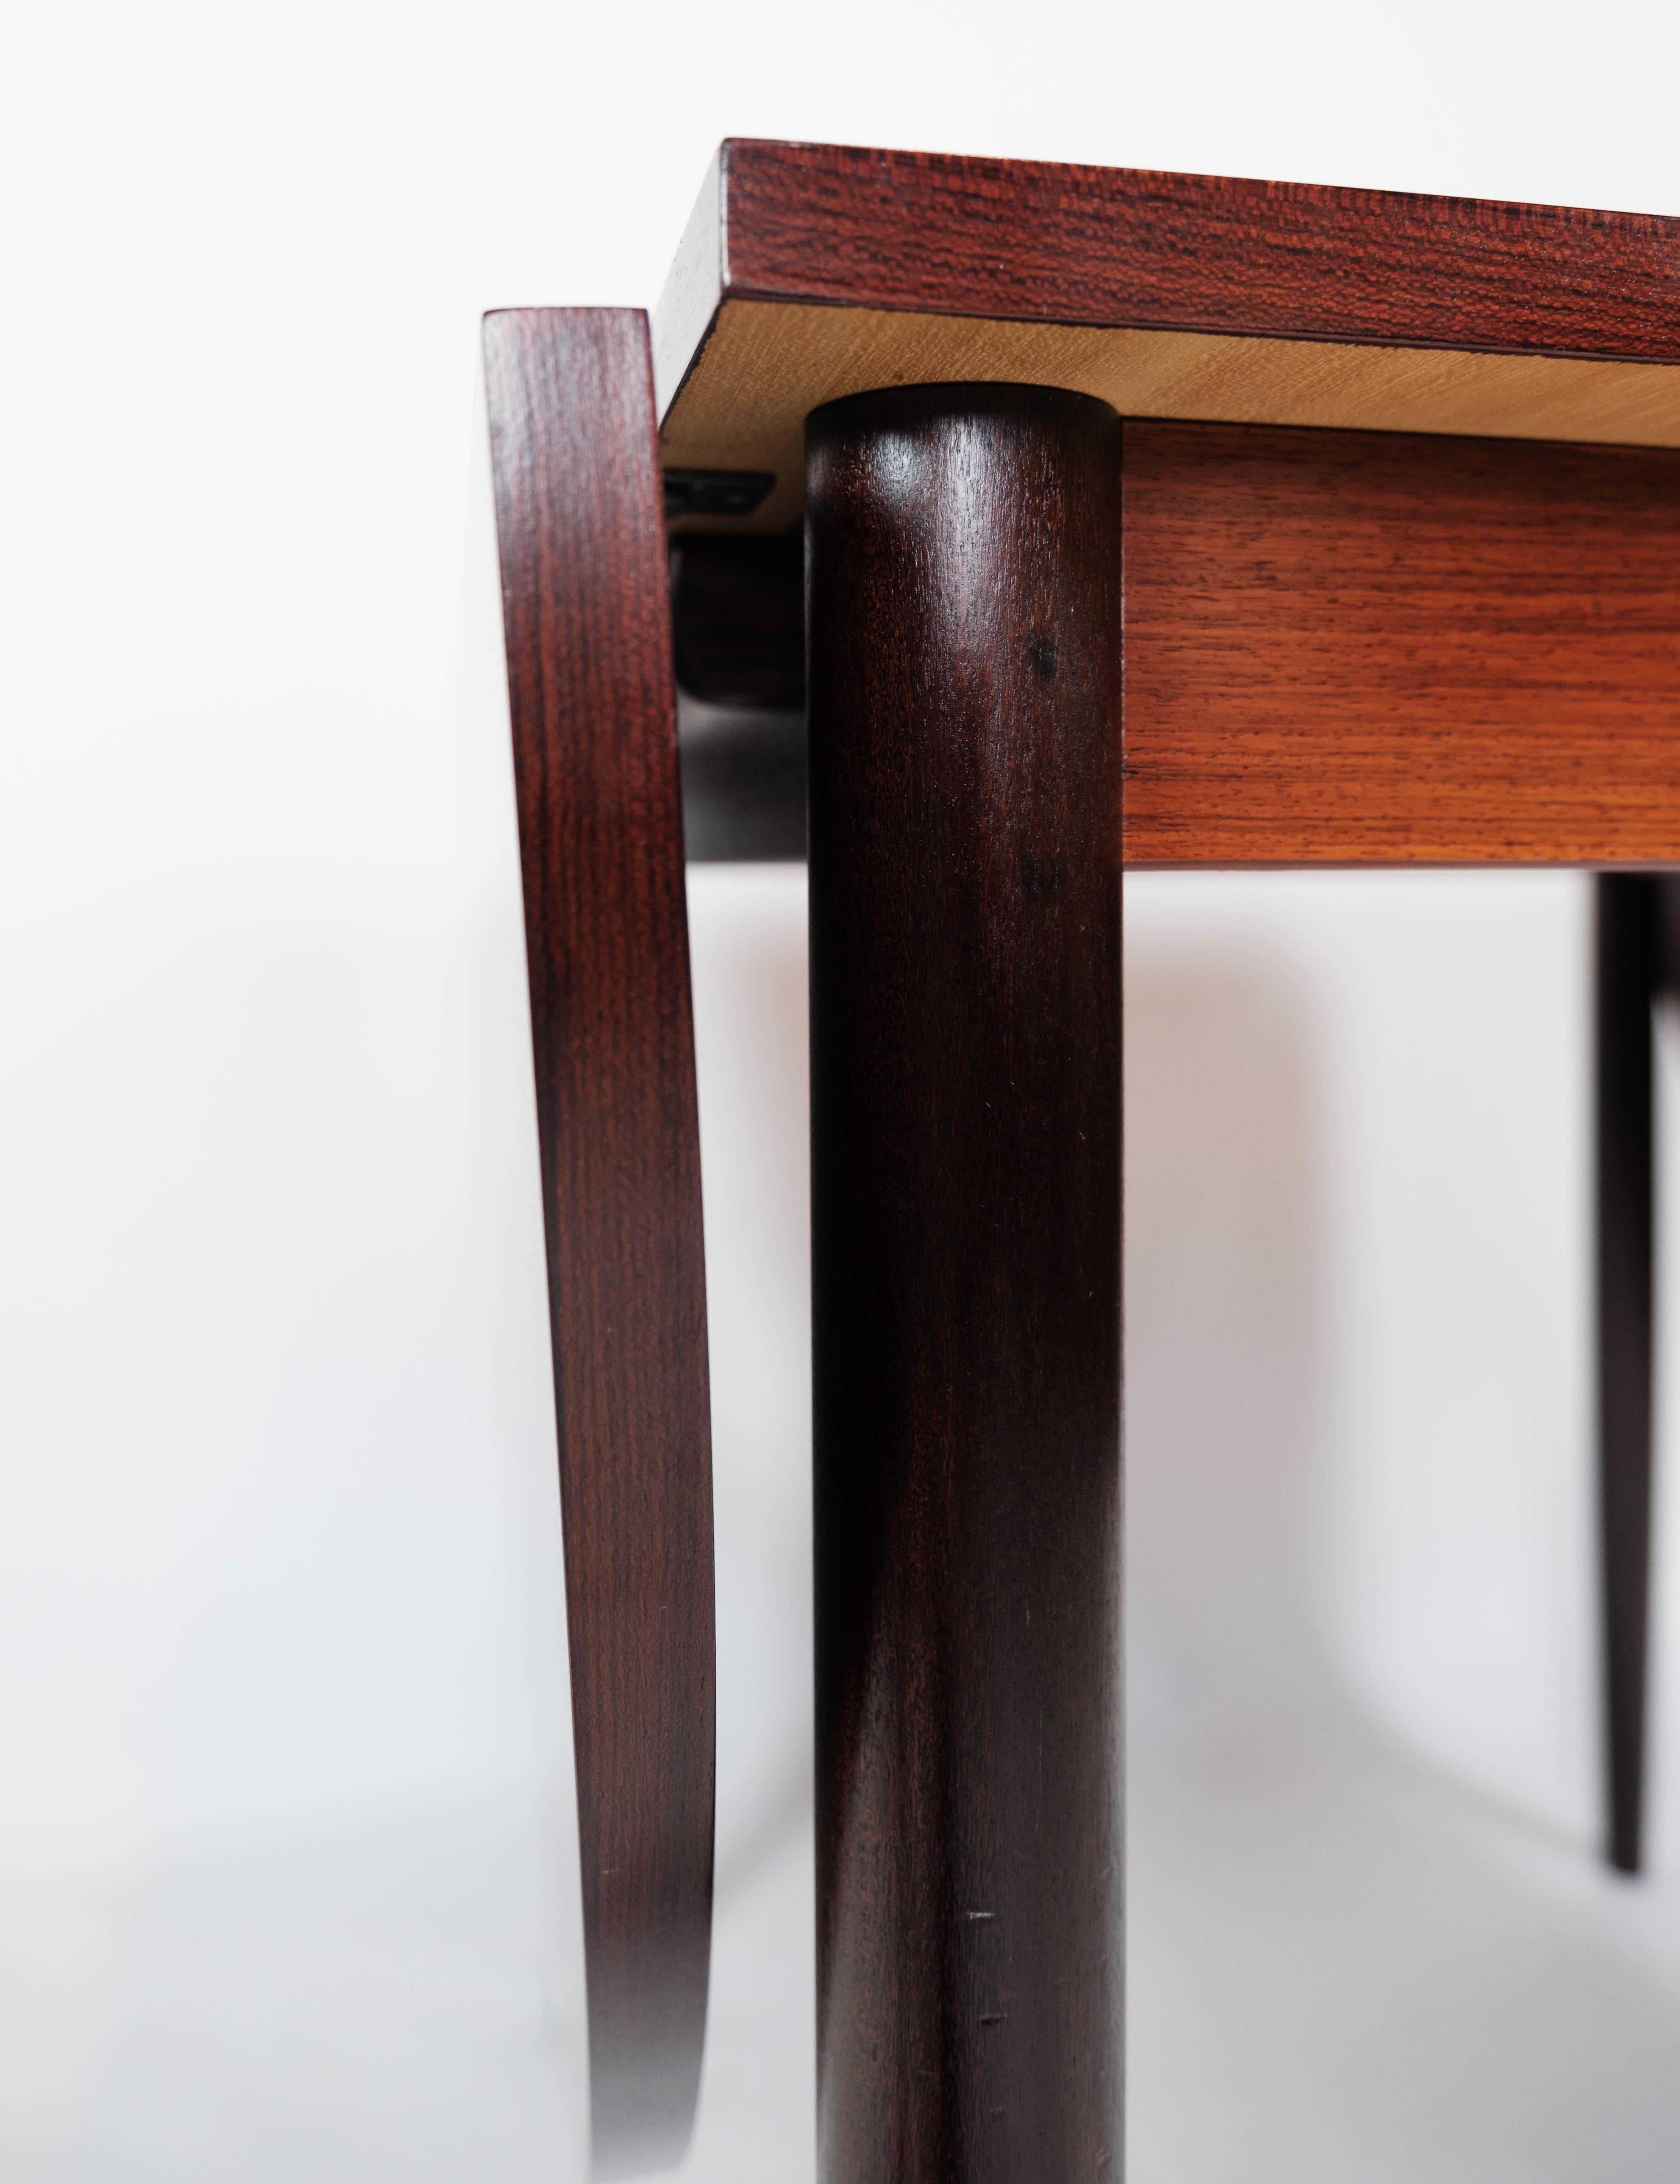 Cette table de salle à manger exquise, conçue par le célèbre Arne Vodder dans les années 1960, illustre l'élégance et le savoir-faire du design danois. Fabriquée dans un luxueux bois de rose, cette table dégage une impression de sophistication et